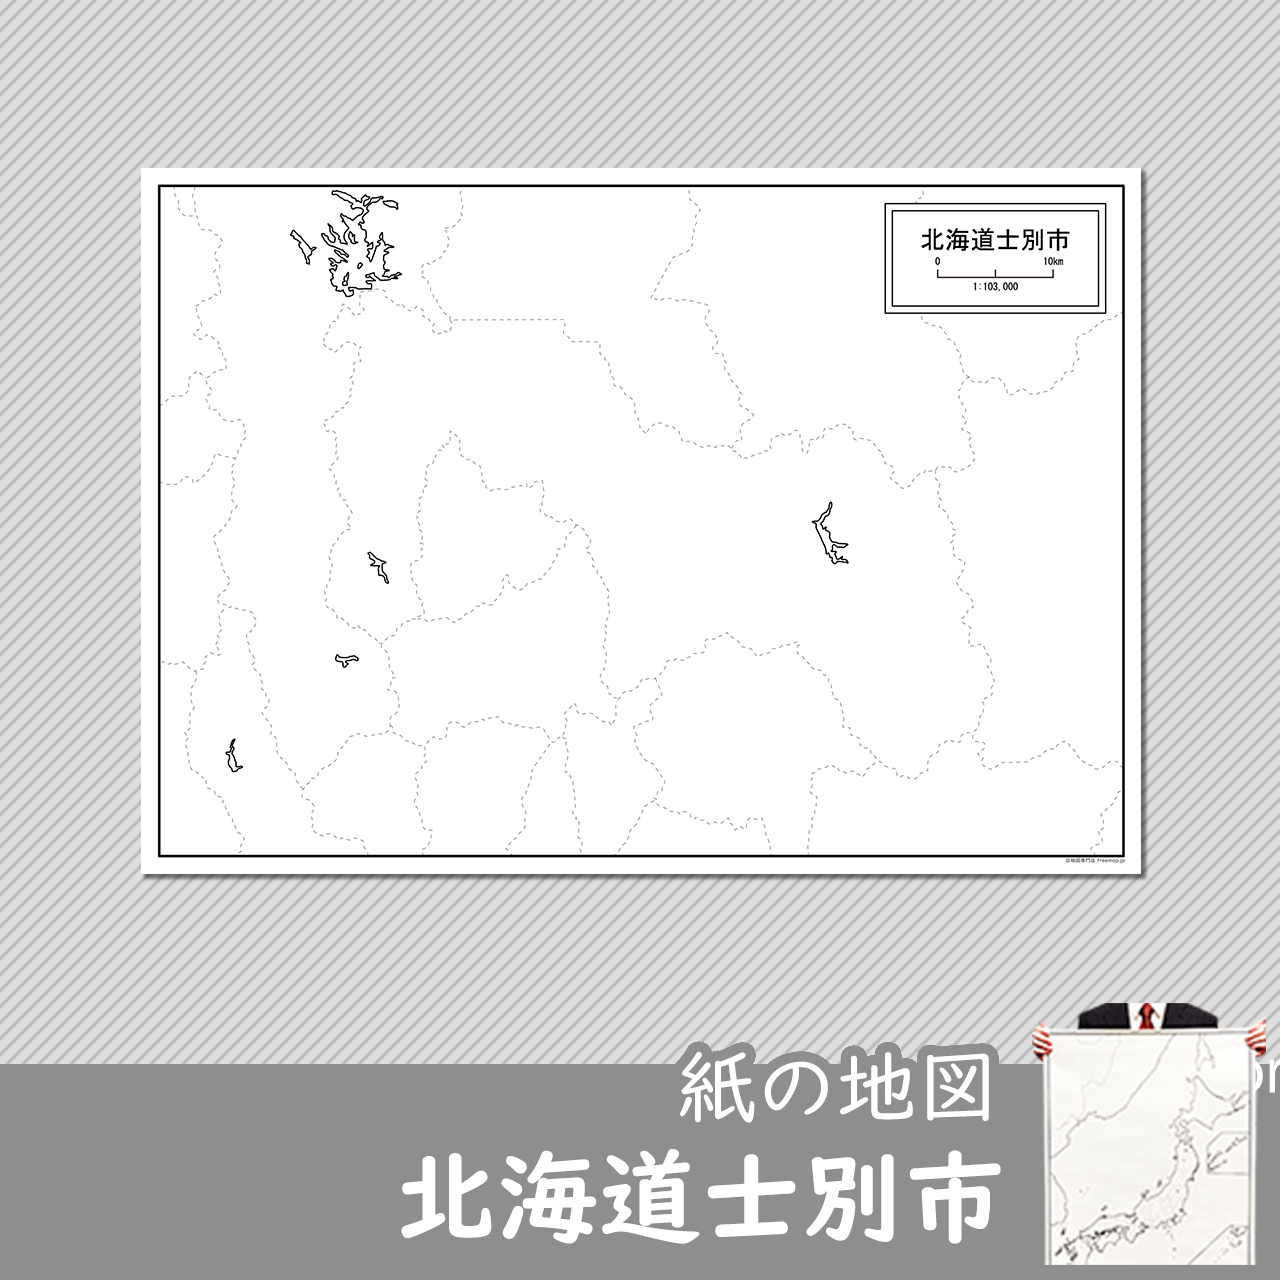 士別市の紙の白地図のサムネイル